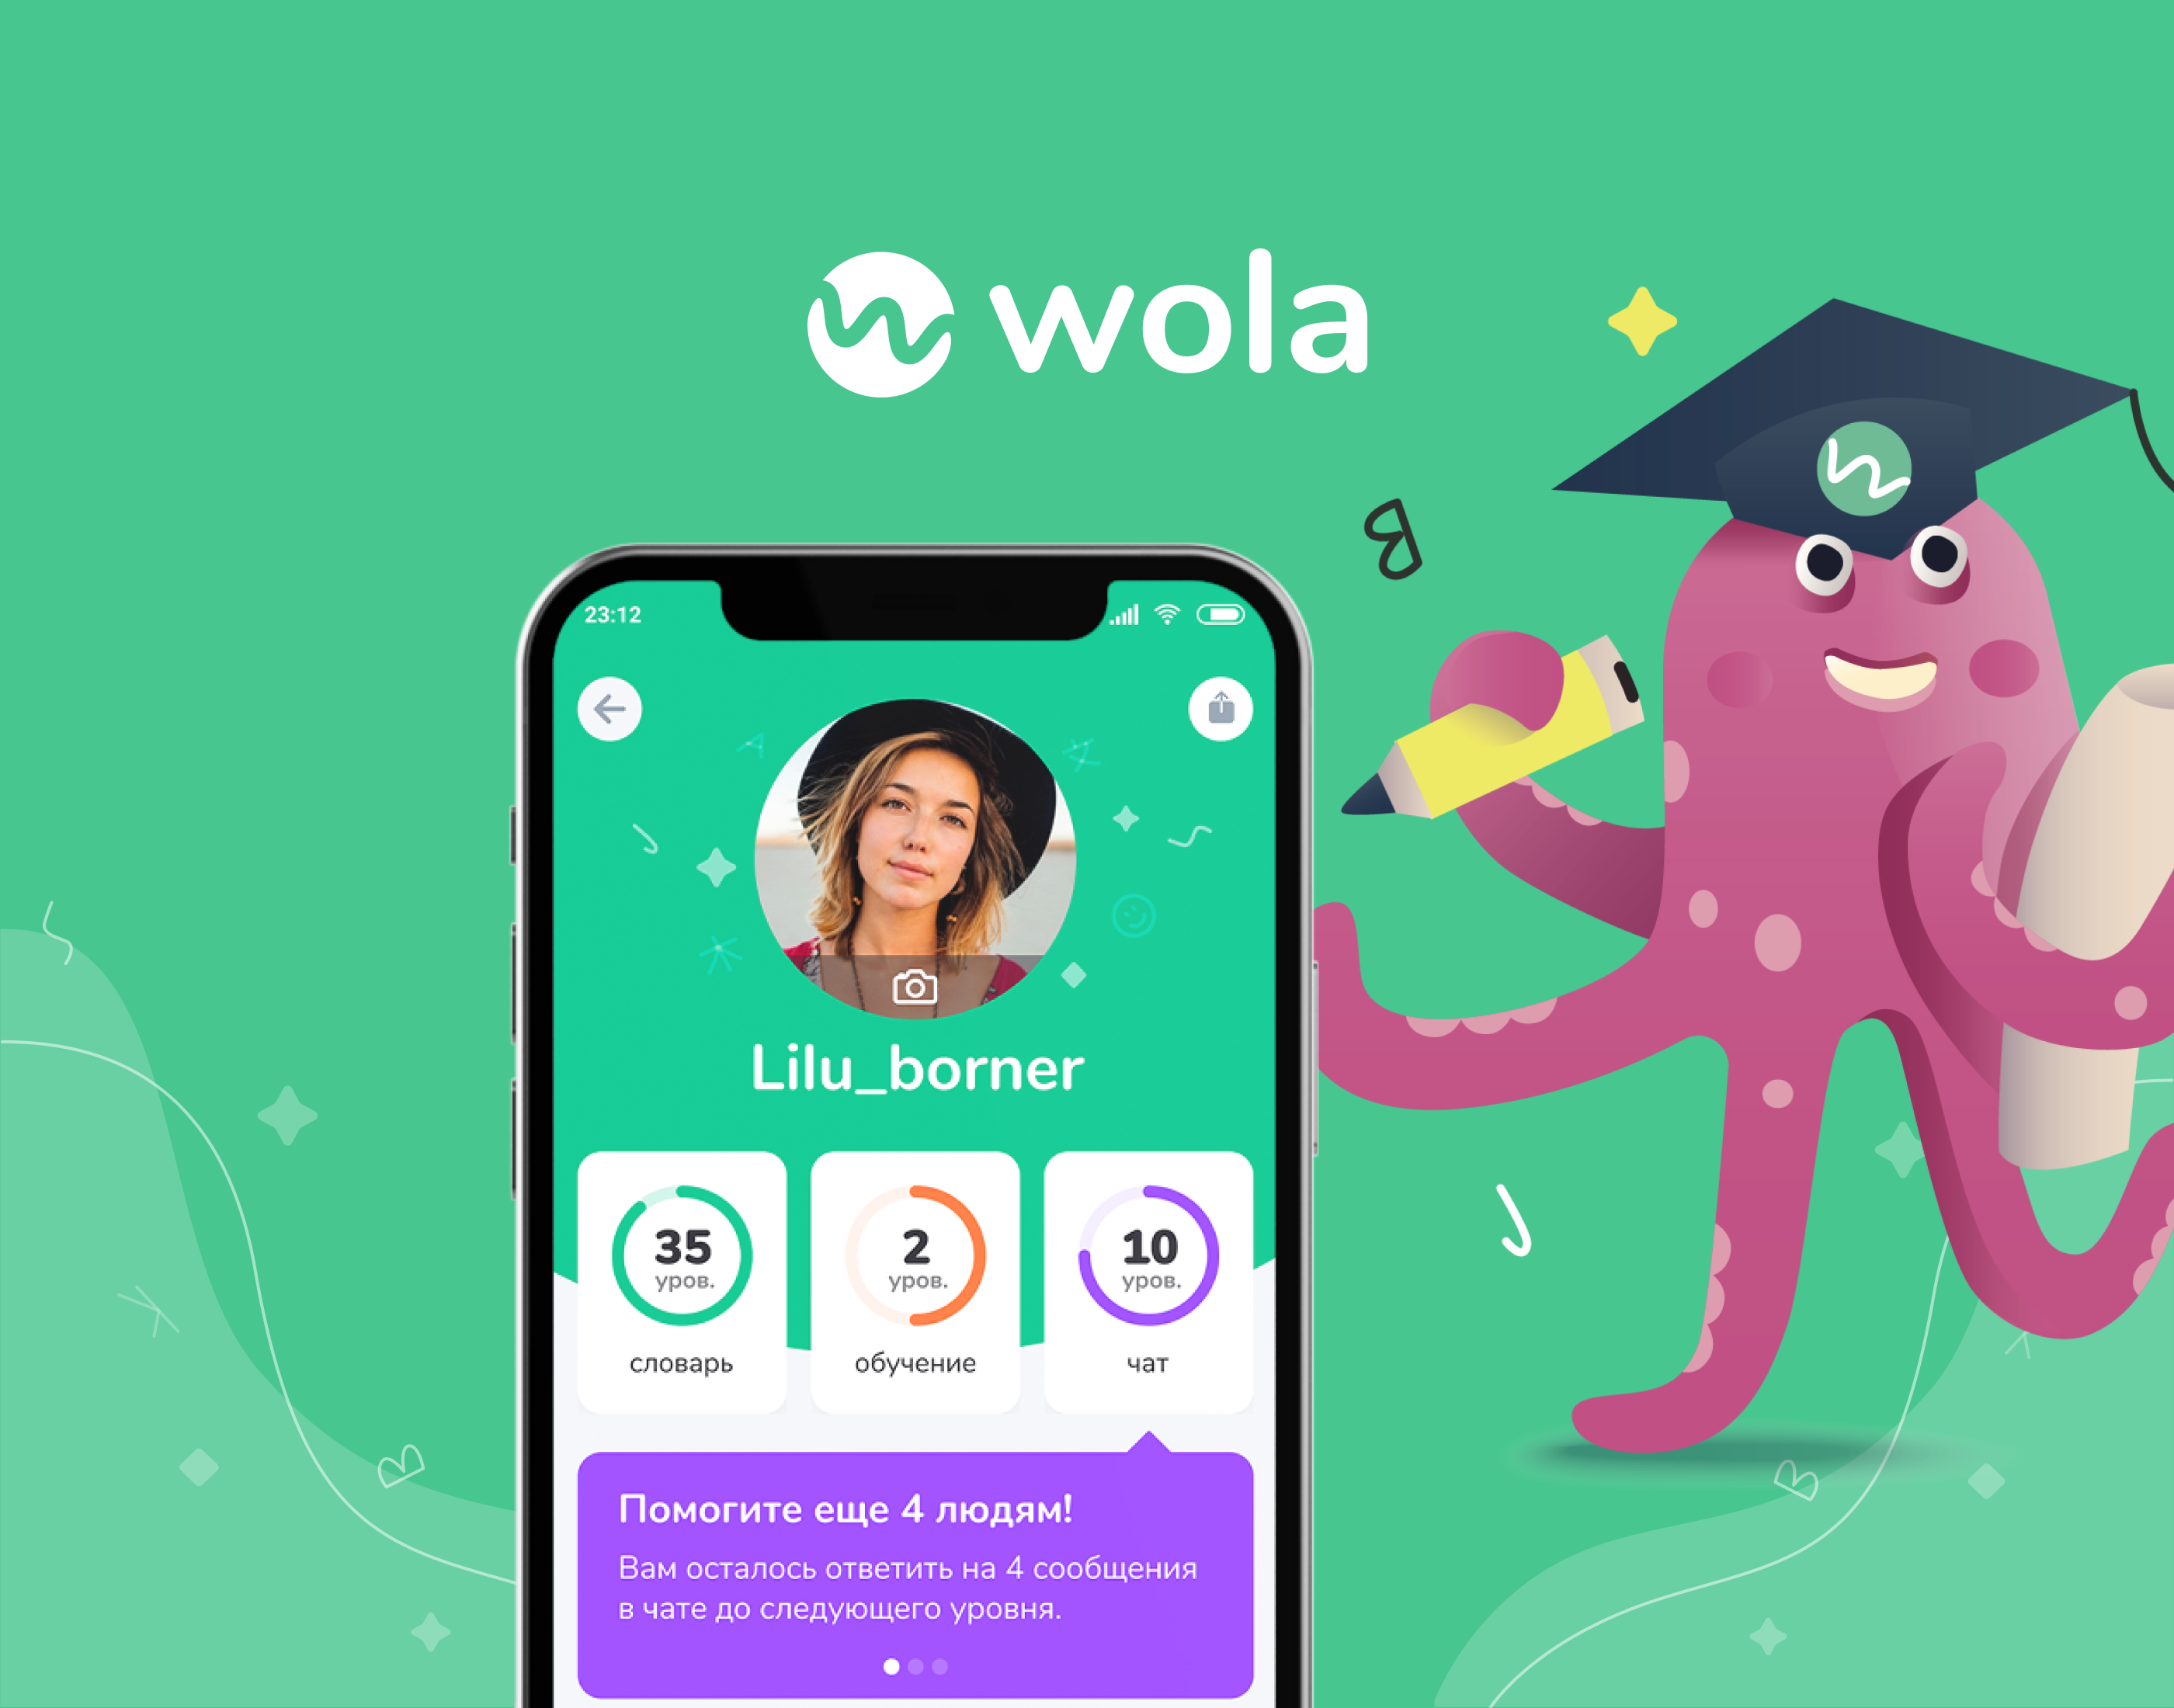 Wola - сервис изучения иностранных языков